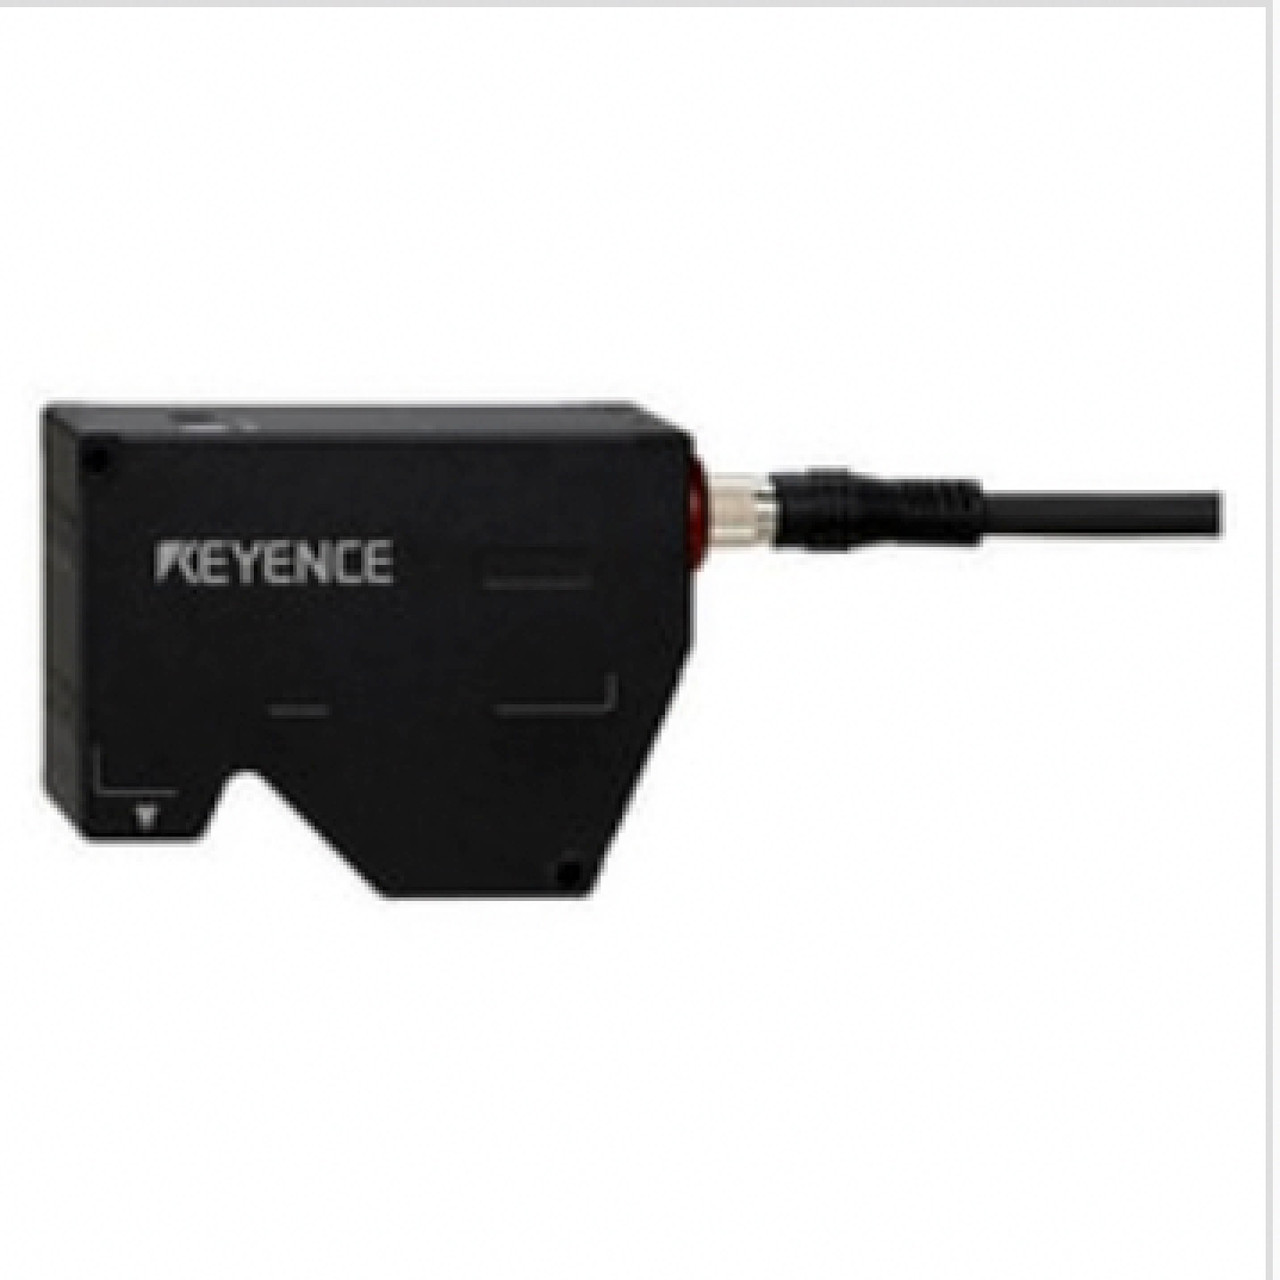 Keyence LJ-V7080 High-Speed 2D Laser Profiler, Sensor Head [New]